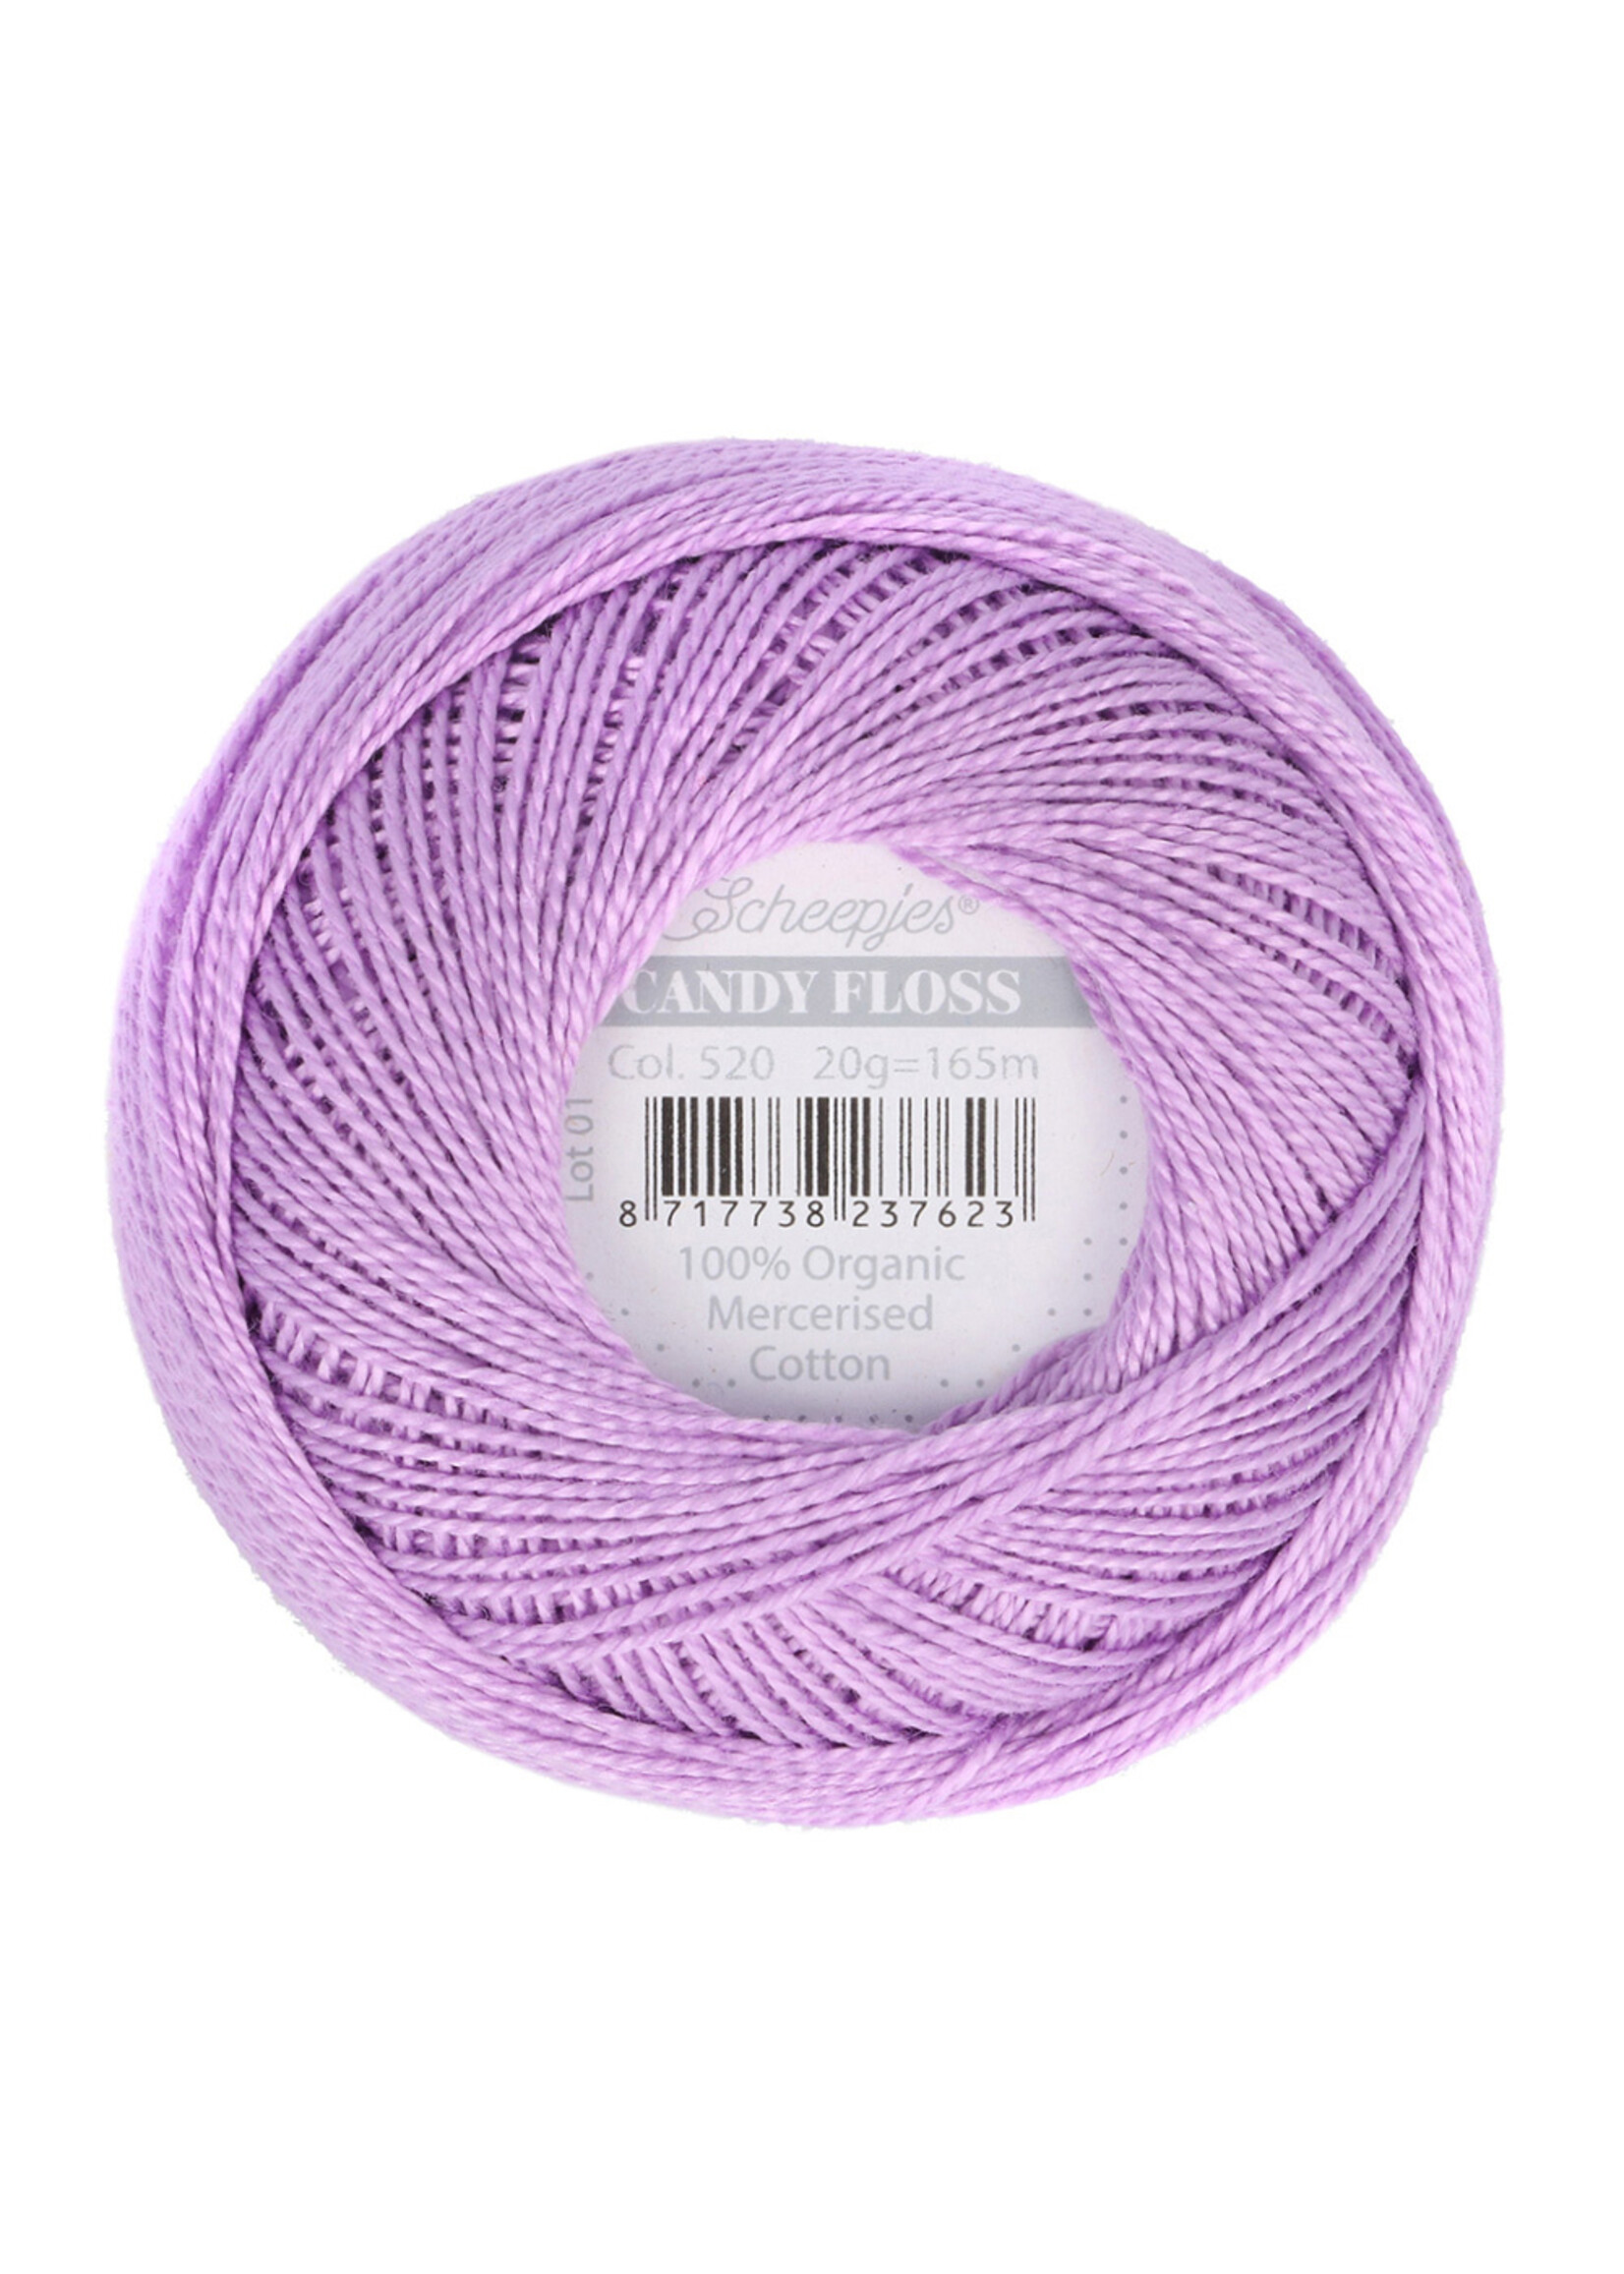 Scheepjes Candy Floss - 520 Lavender